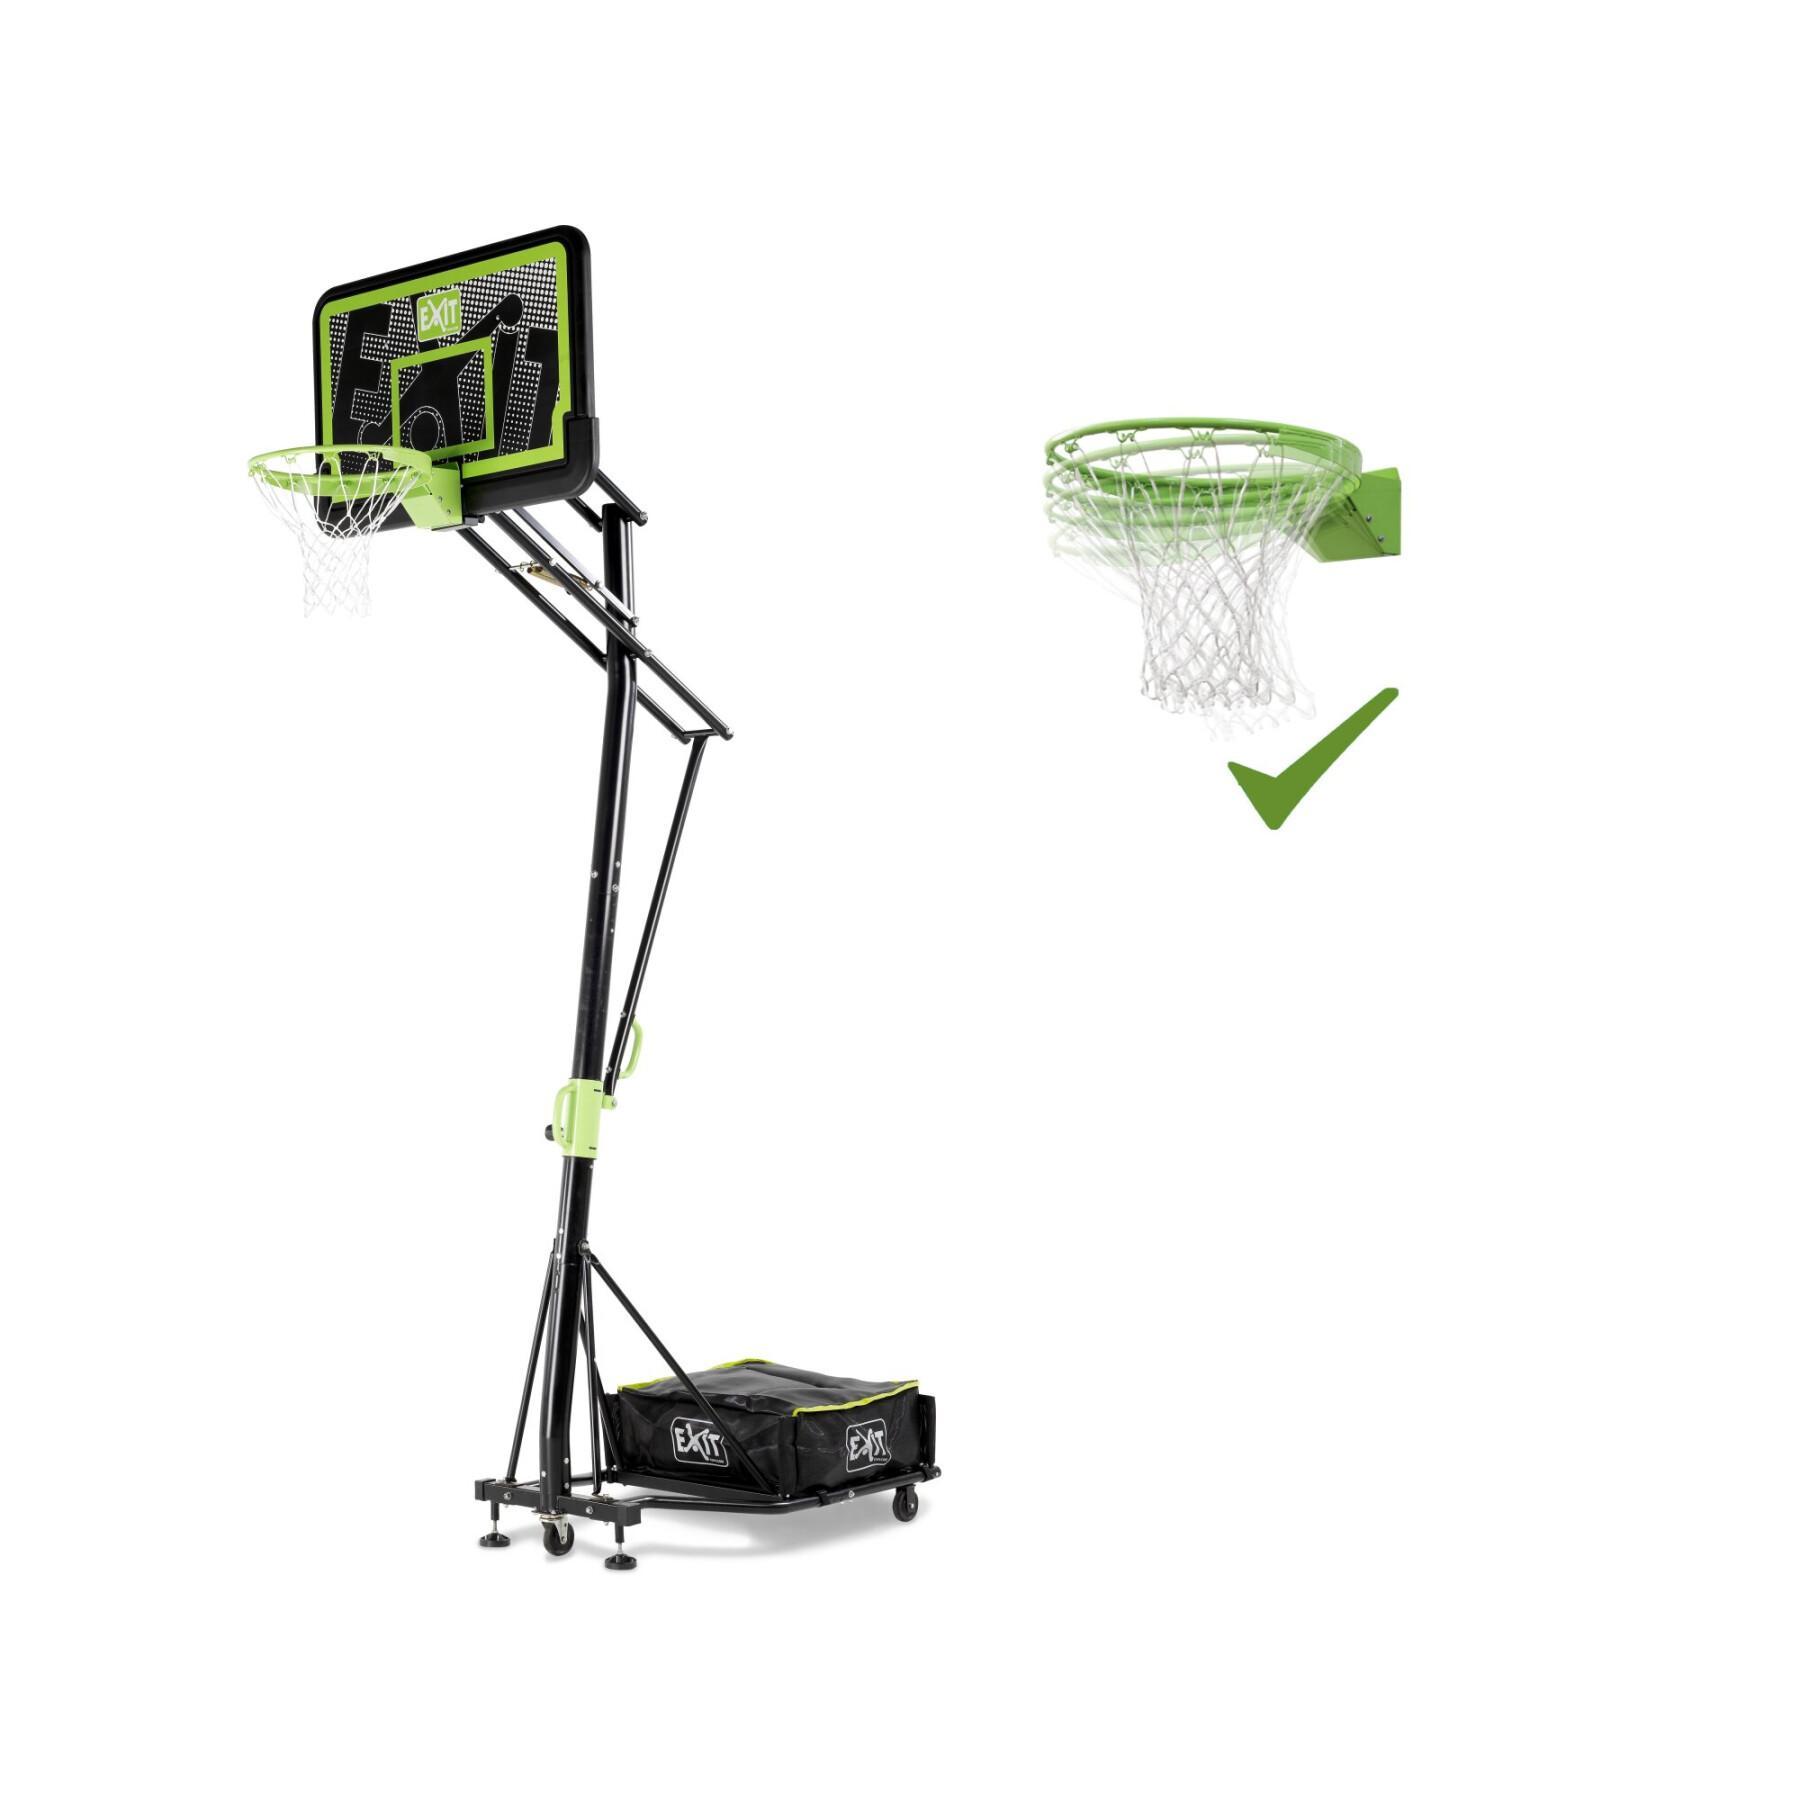 Canasta de baloncesto móvil con ruedas y aro de mate Exit Toys Galaxy